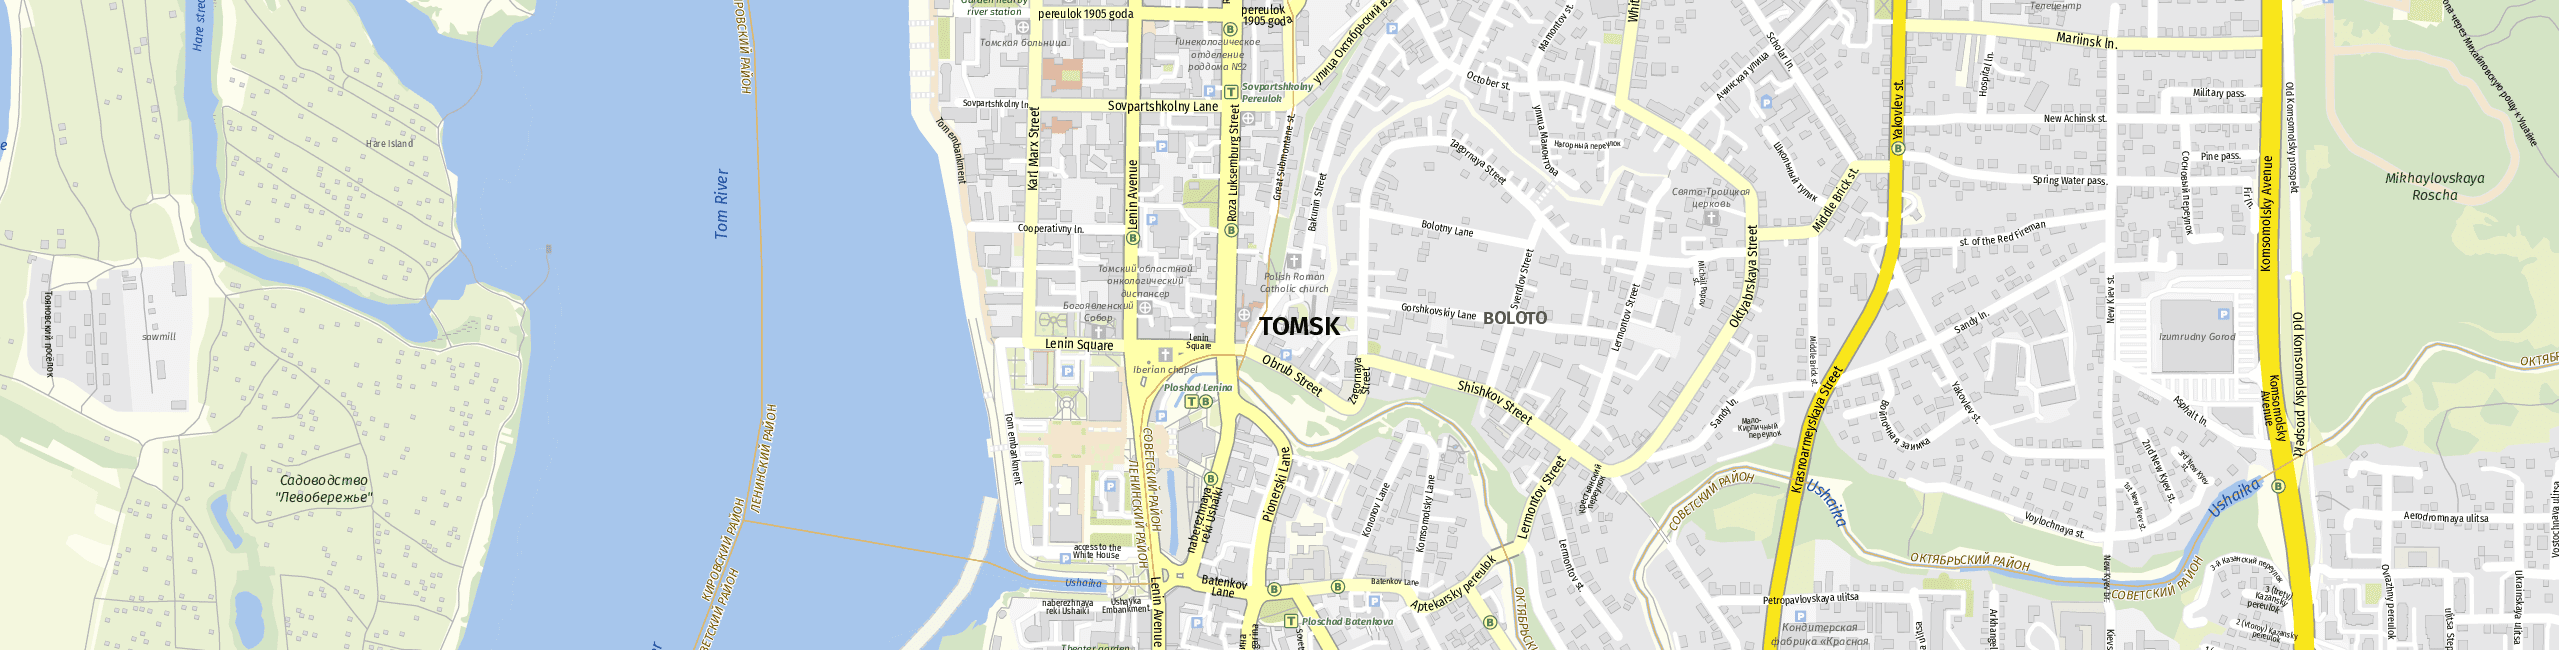 Stadtplan Tomsk zum Downloaden.